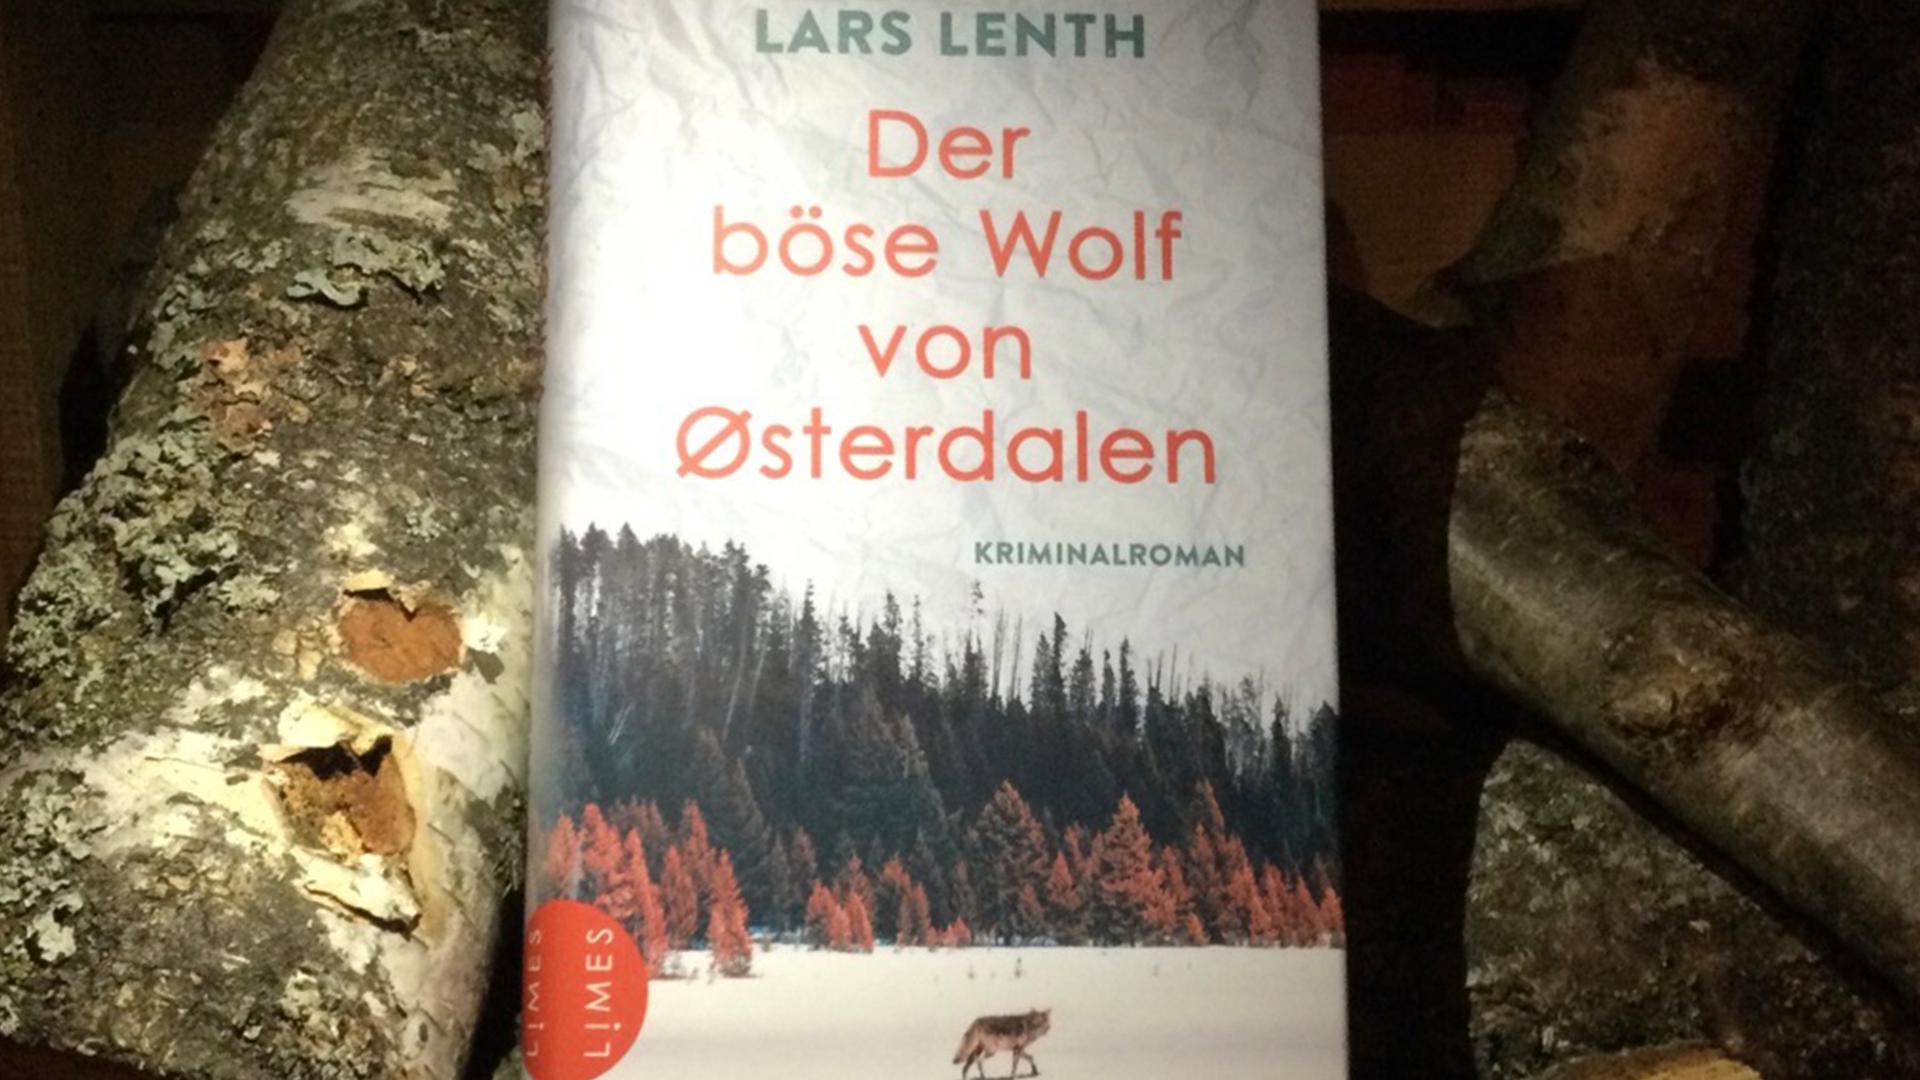 Die Buchempfehlung der Buchhandlung der Rabe, Karlsruhe: Der böse Wolf von Østerdalen von Lars Lenth